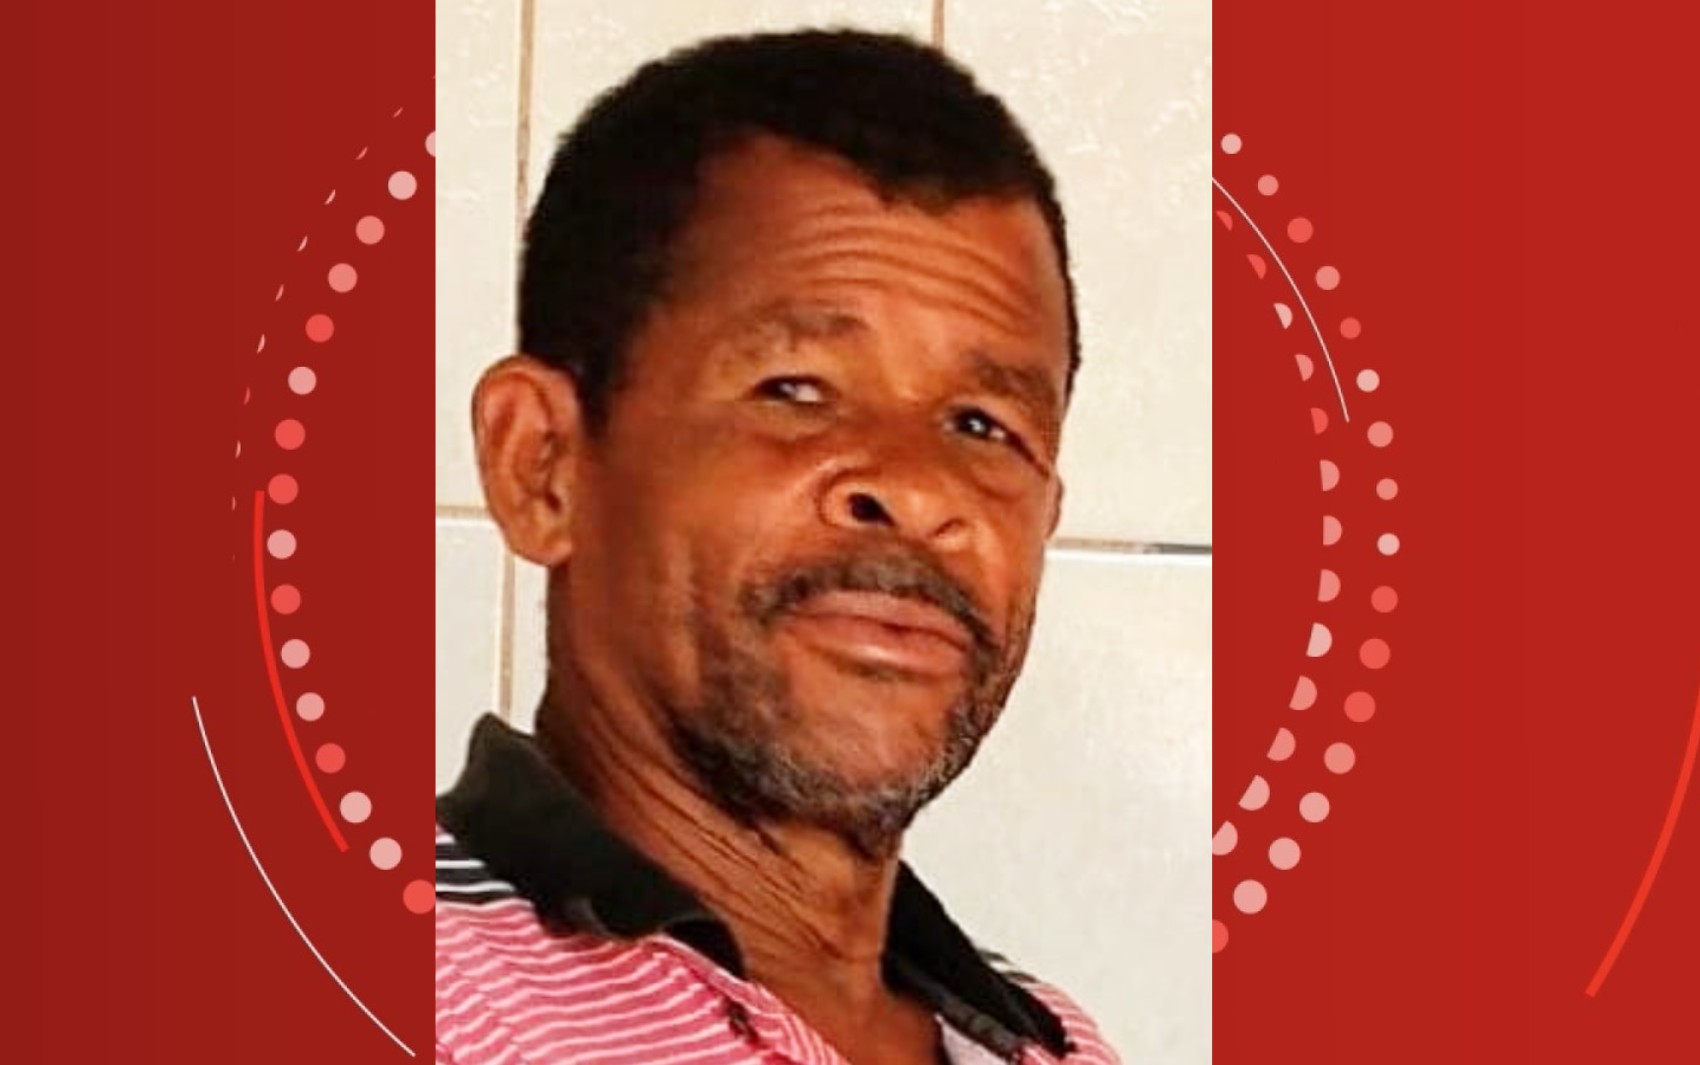 Eletricista de 66 anos morre após sofrer descarga elétrica enquanto realizava ligação clandestina em poste na Bahia